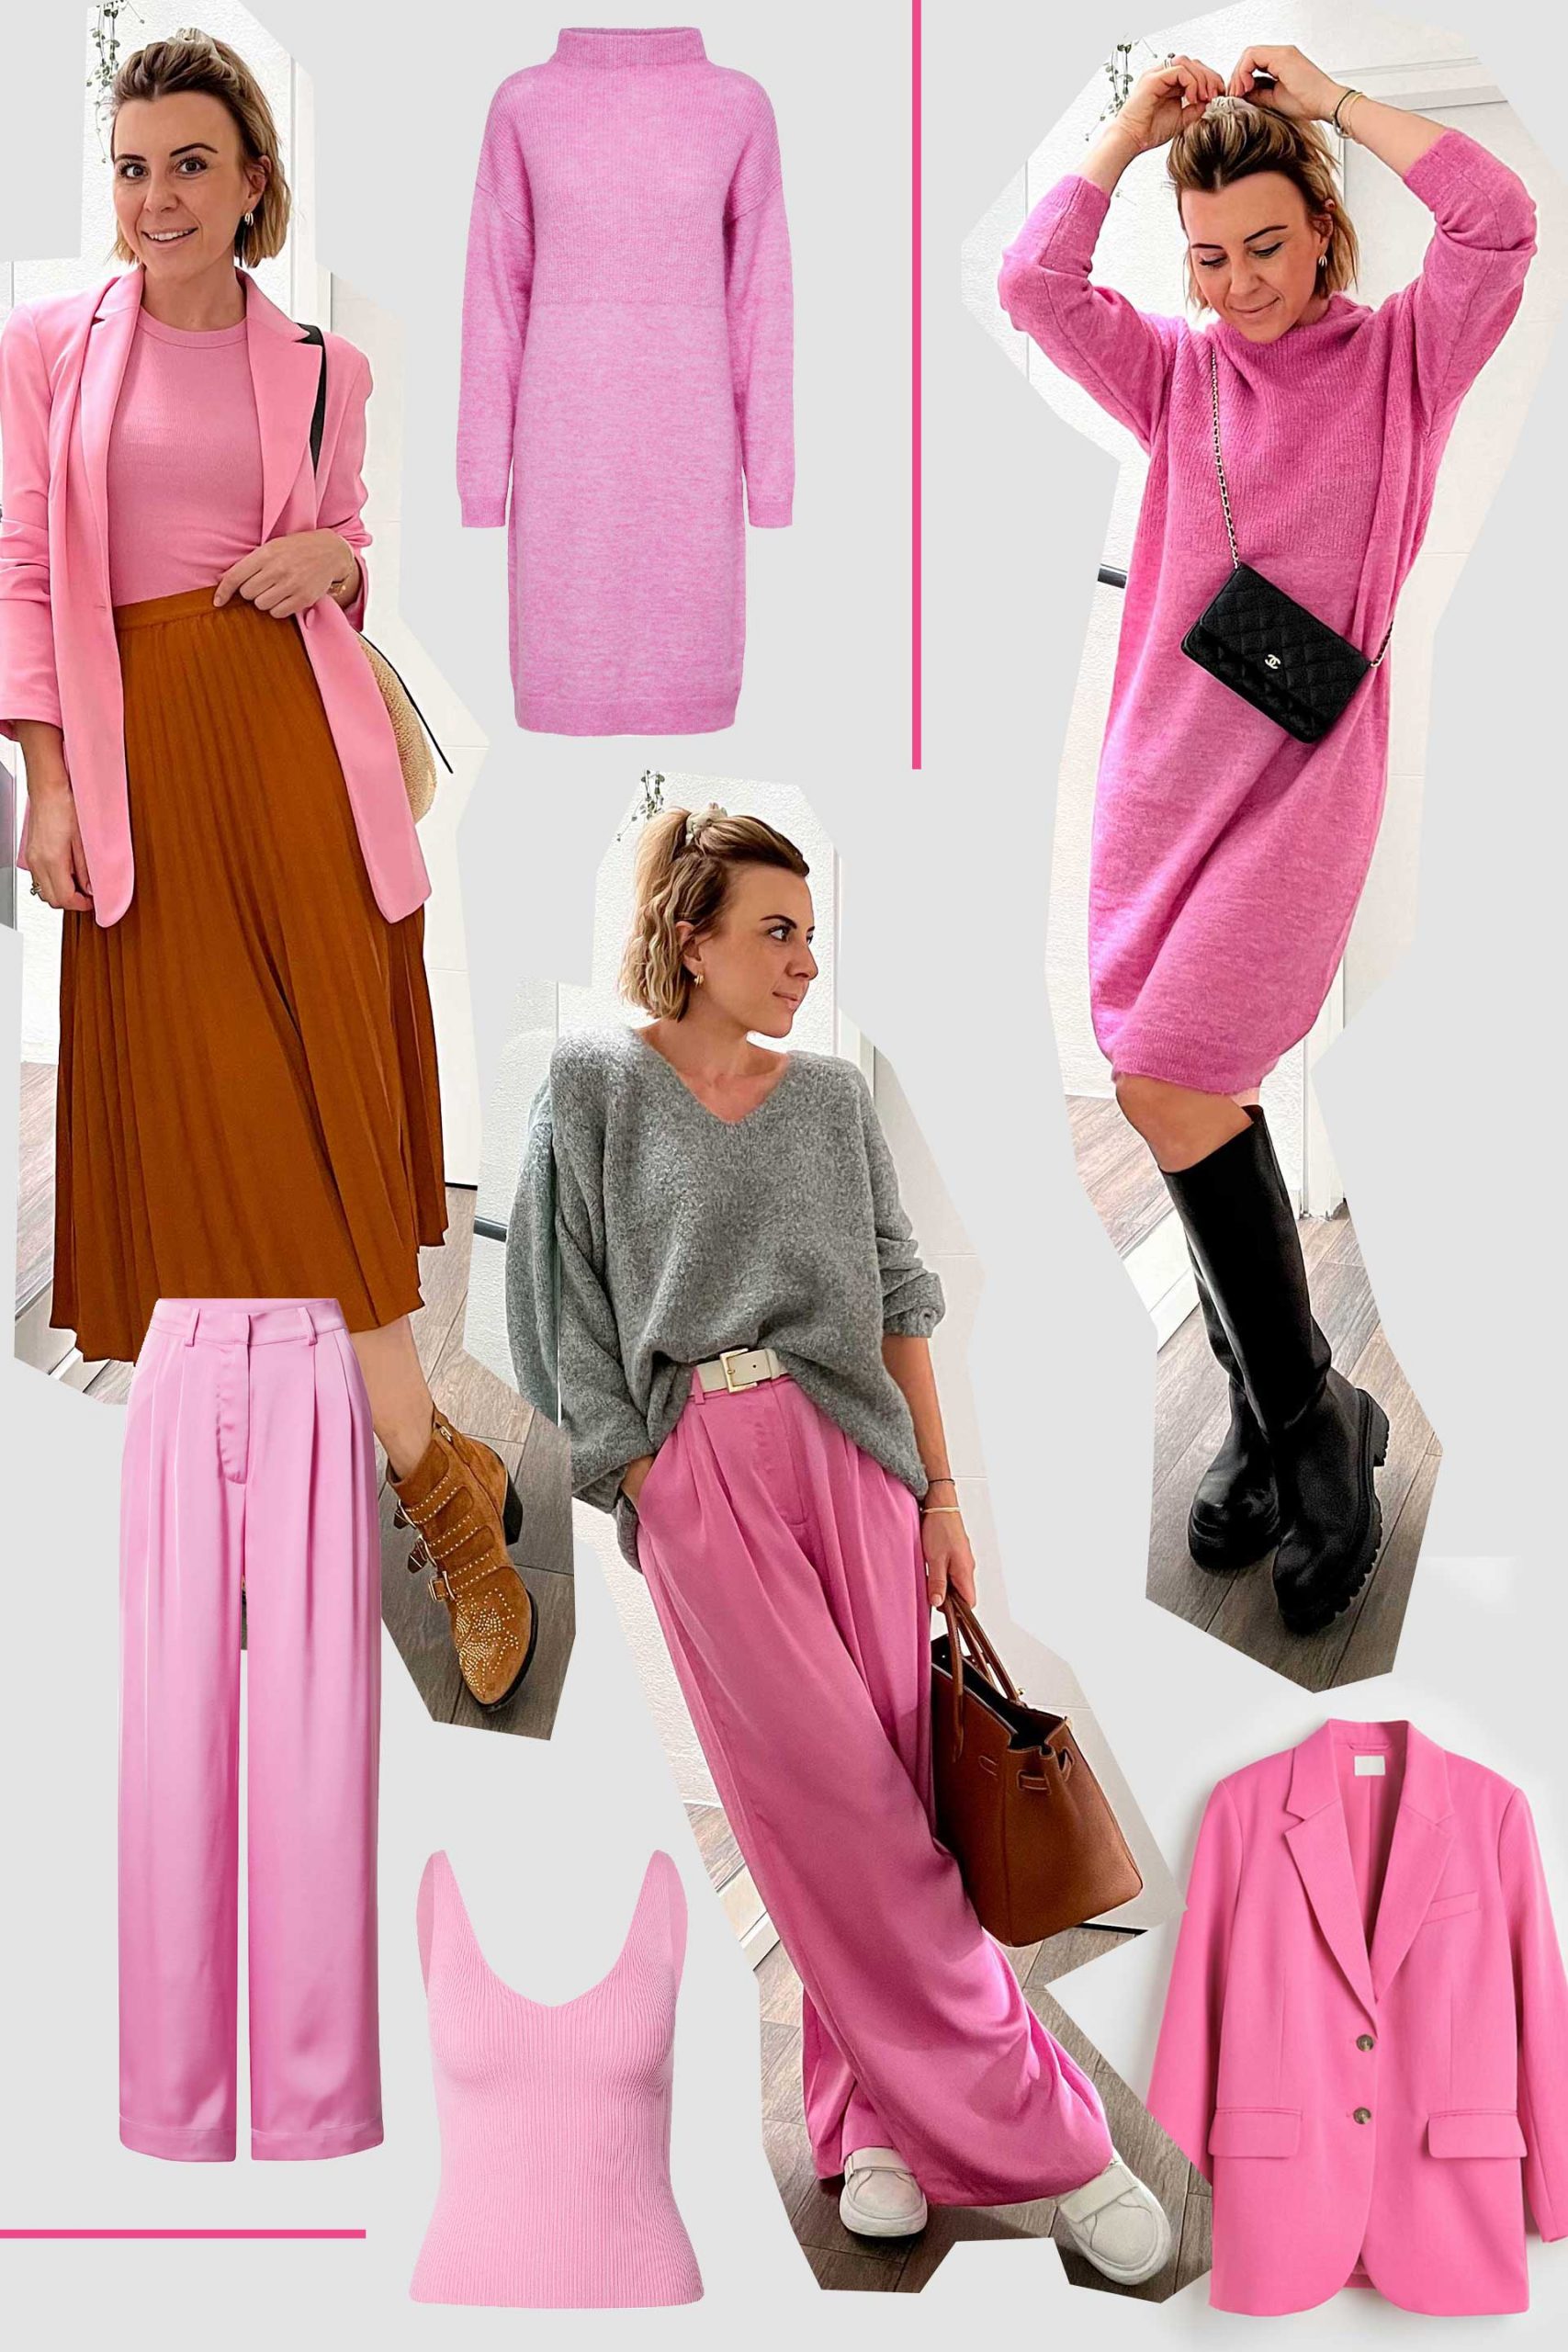 Pink kombinieren: 3 schöne Outfit-Ideen für den Herbst auf whoismocca.com